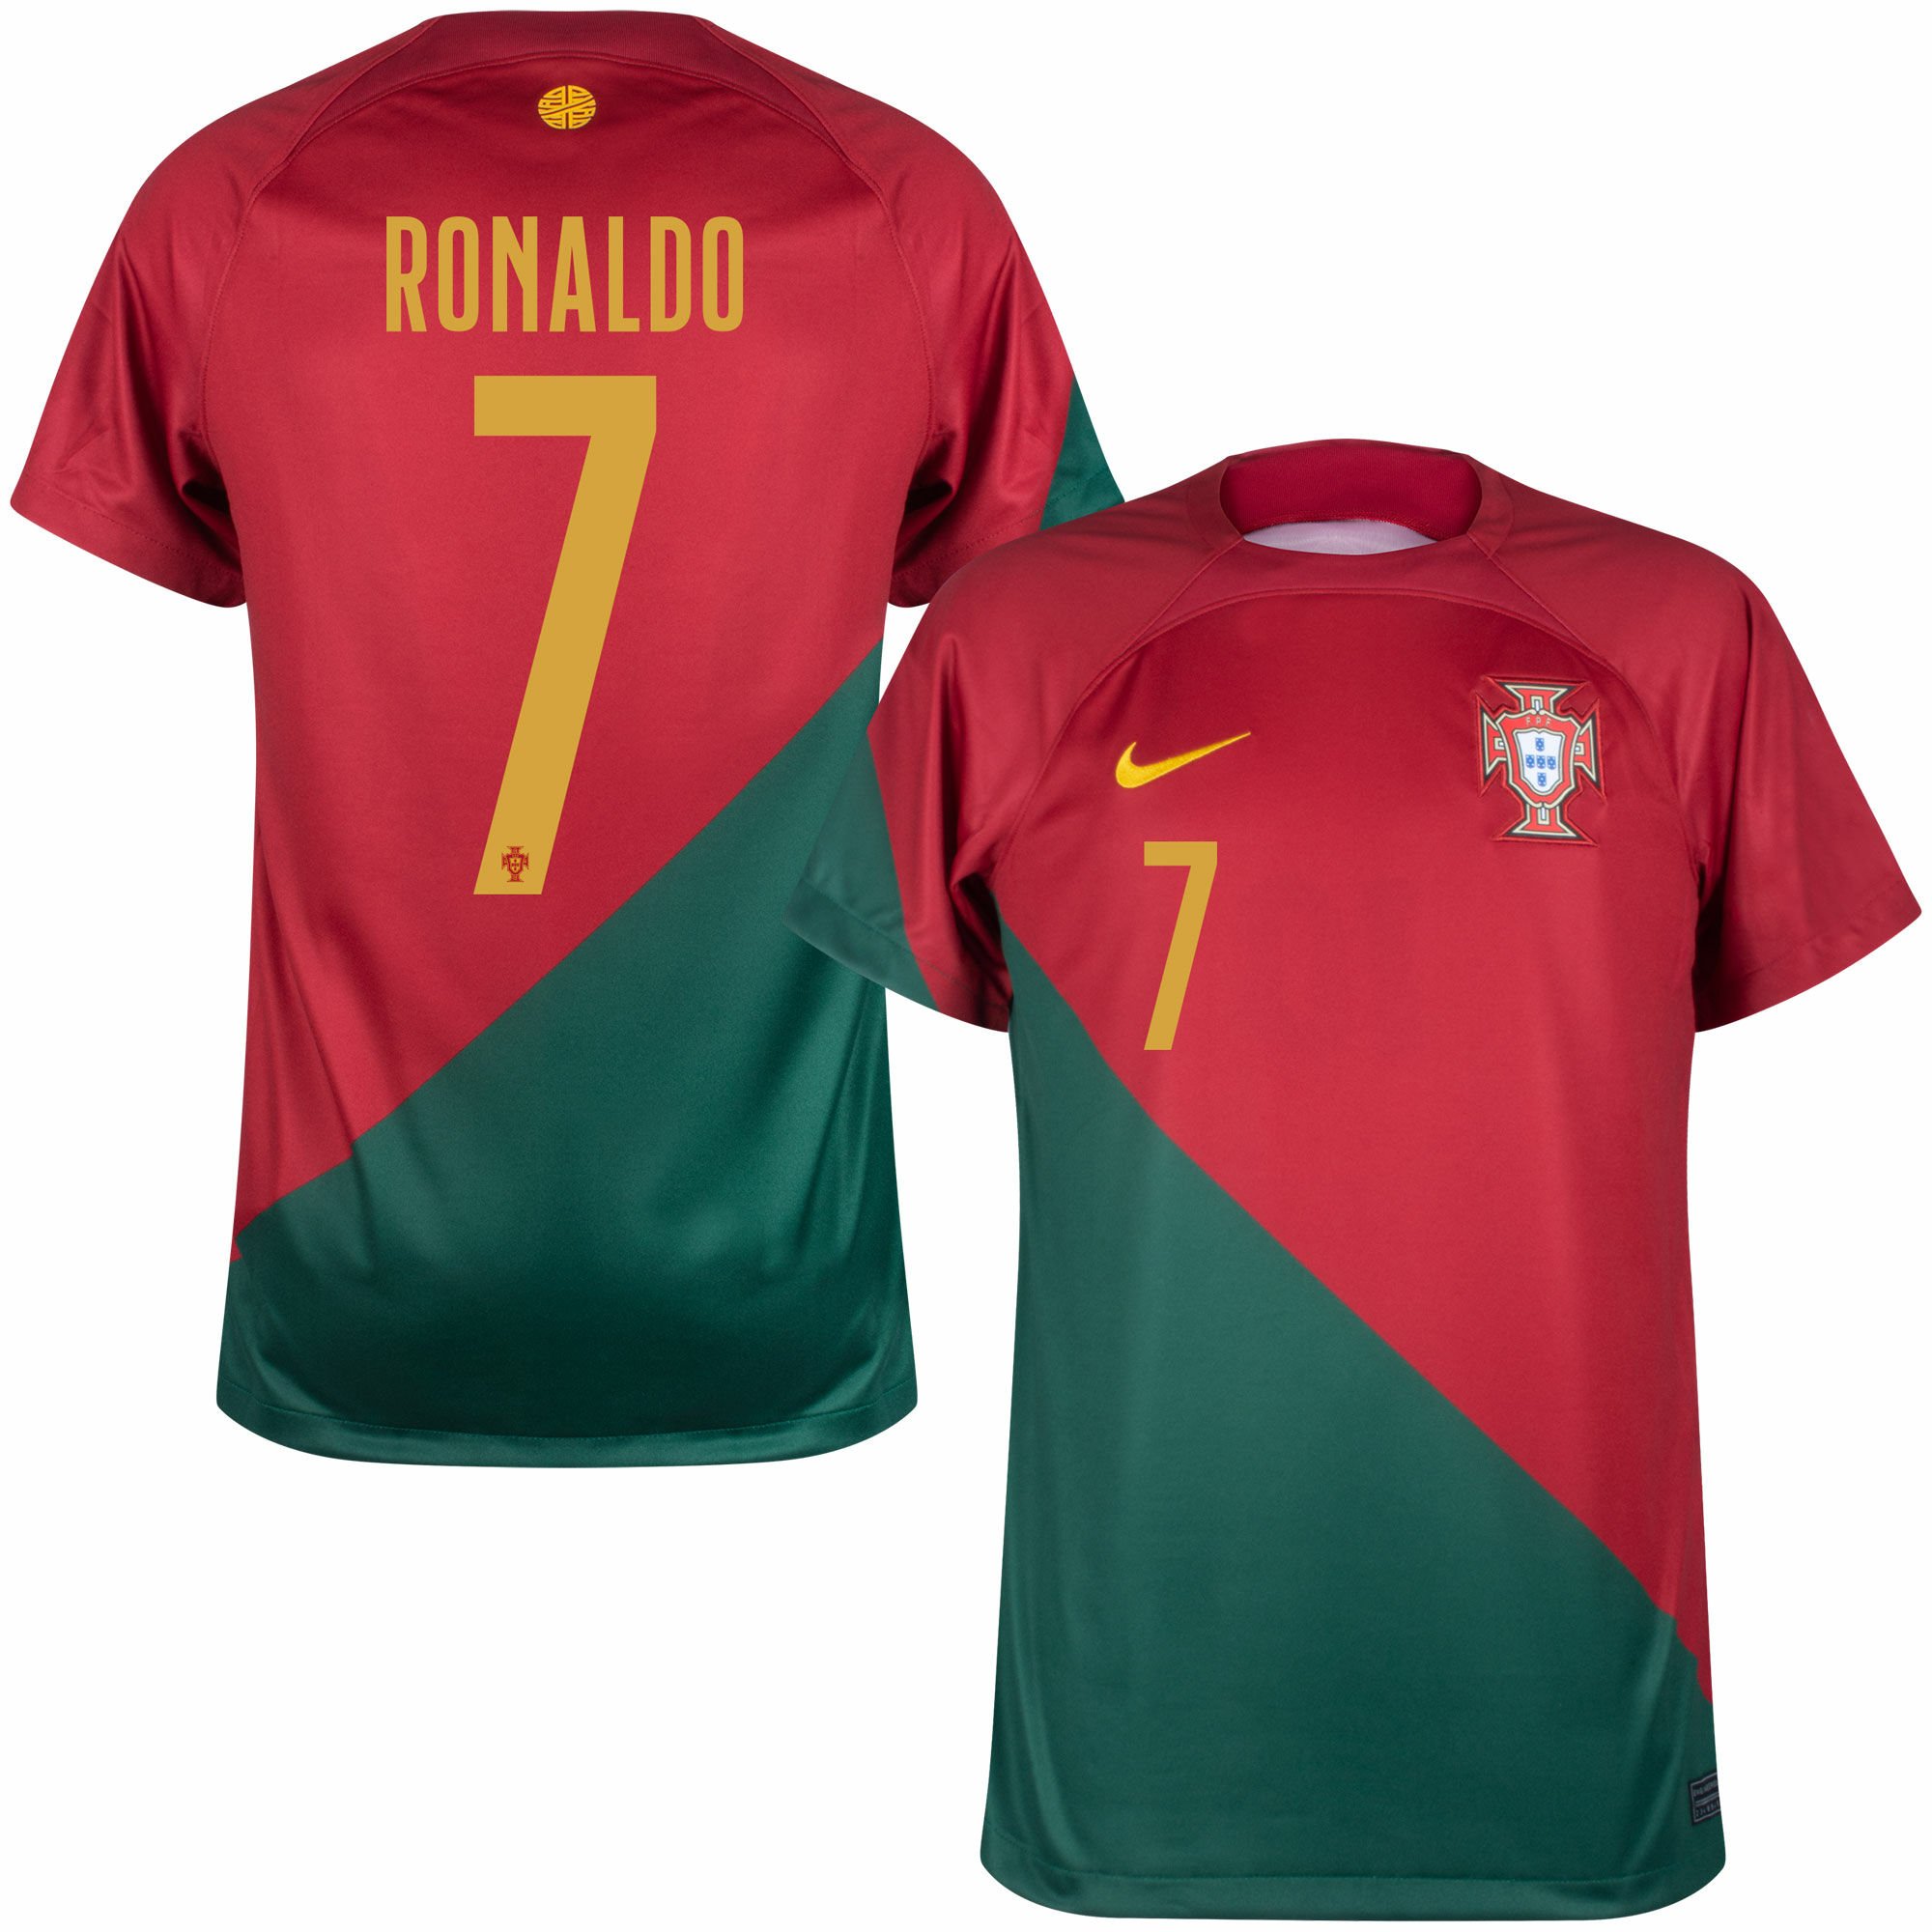 Portugalsko - Dres fotbalový dětský - Ronaldo, vínový, oficiální potisk, domácí, sezóna 2022/23, číslo 7